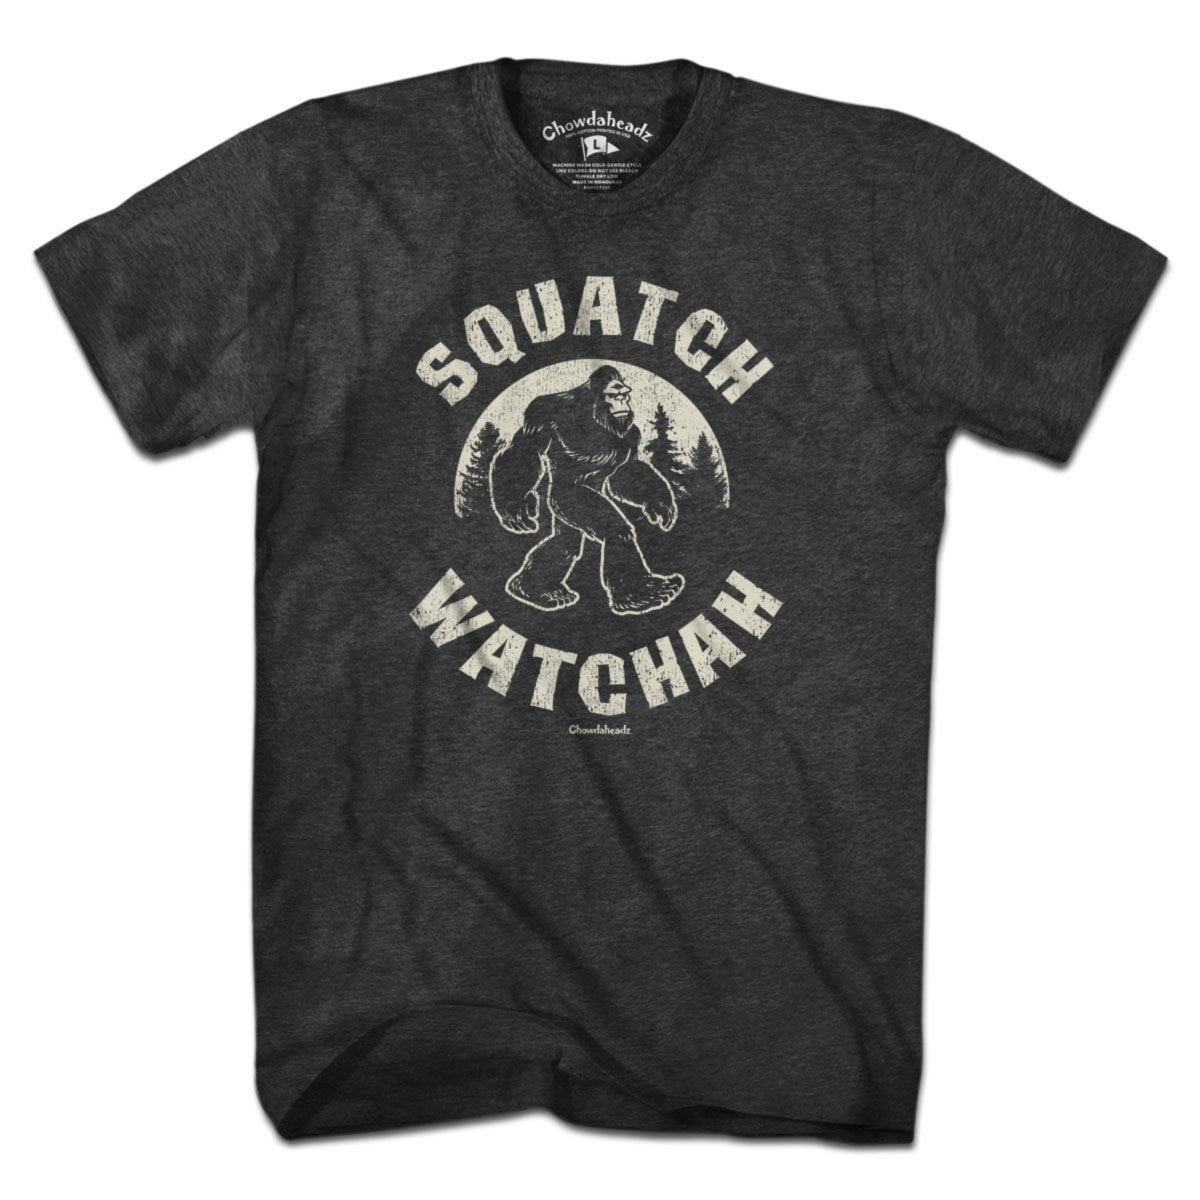 Squatch Watchah T-Shirt - Chowdaheadz